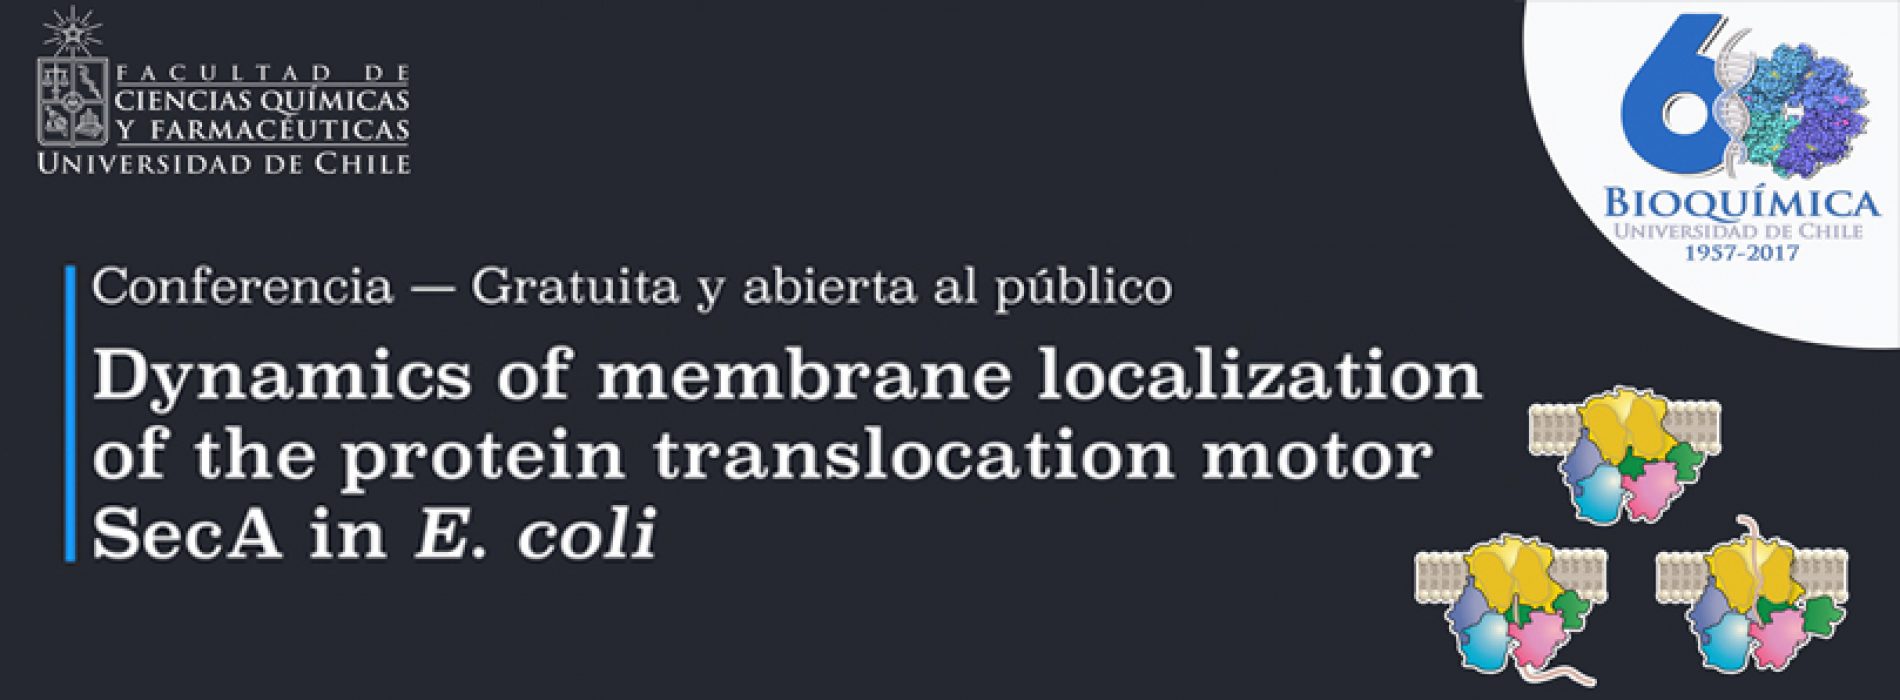 Conferencia “Dynamics of membrane localization of the protein translocation motor SecA in E. coli”